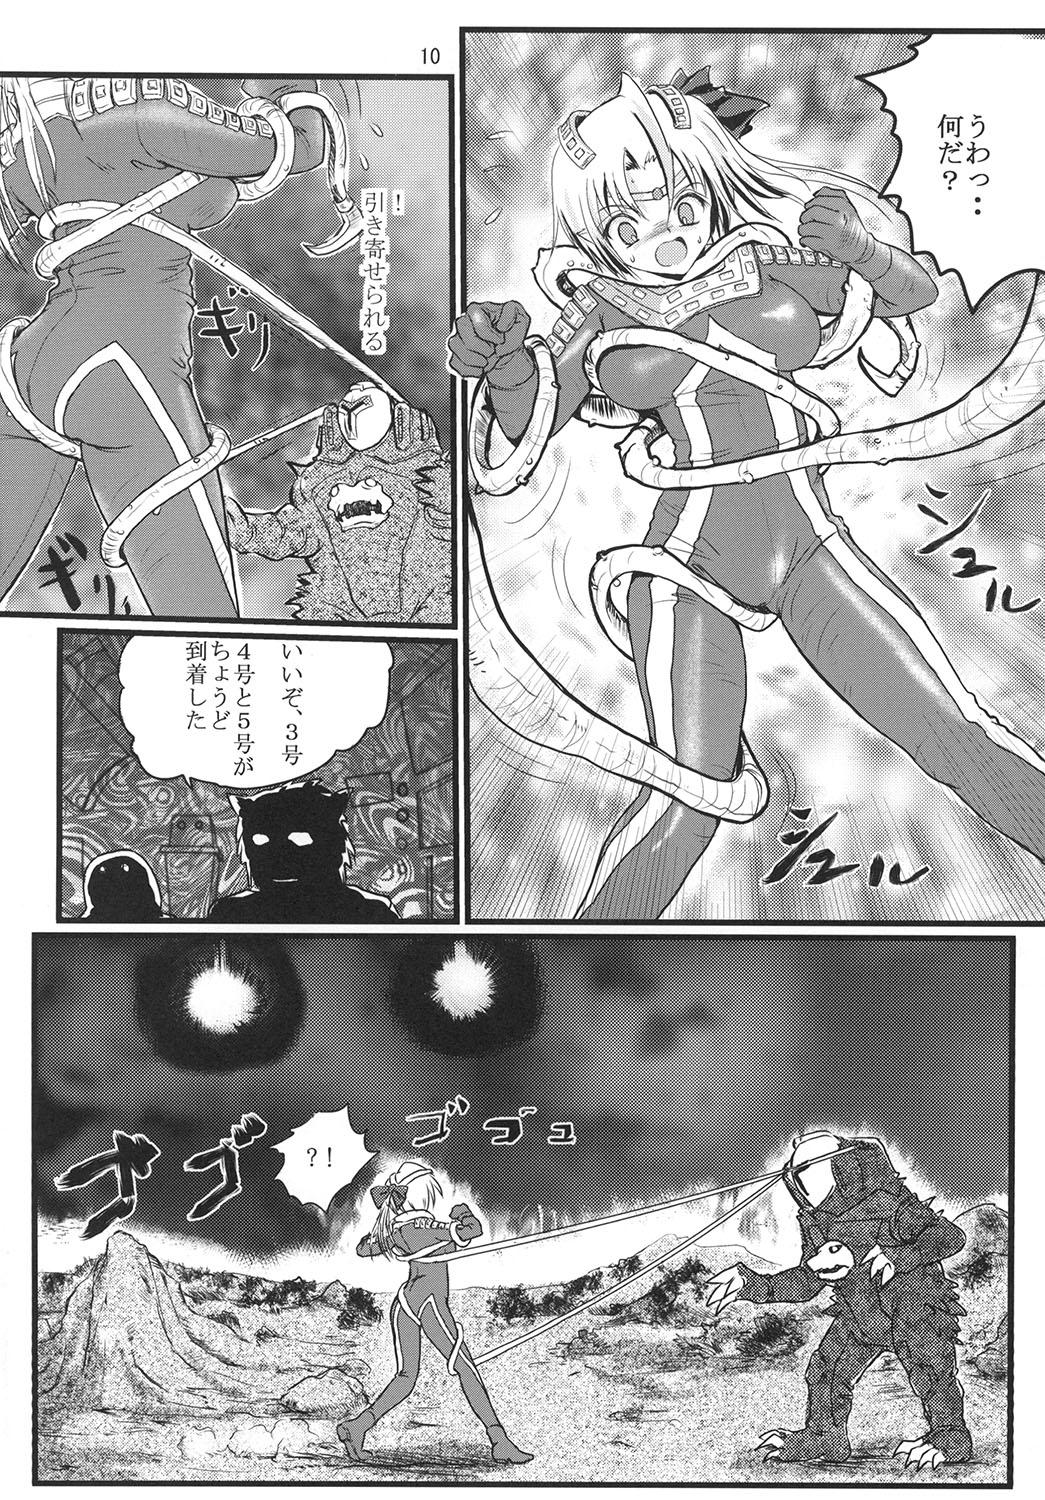 Pussy Lick Ultra Nanako Zettaizetsumei! - Ultraman Outside - Page 10